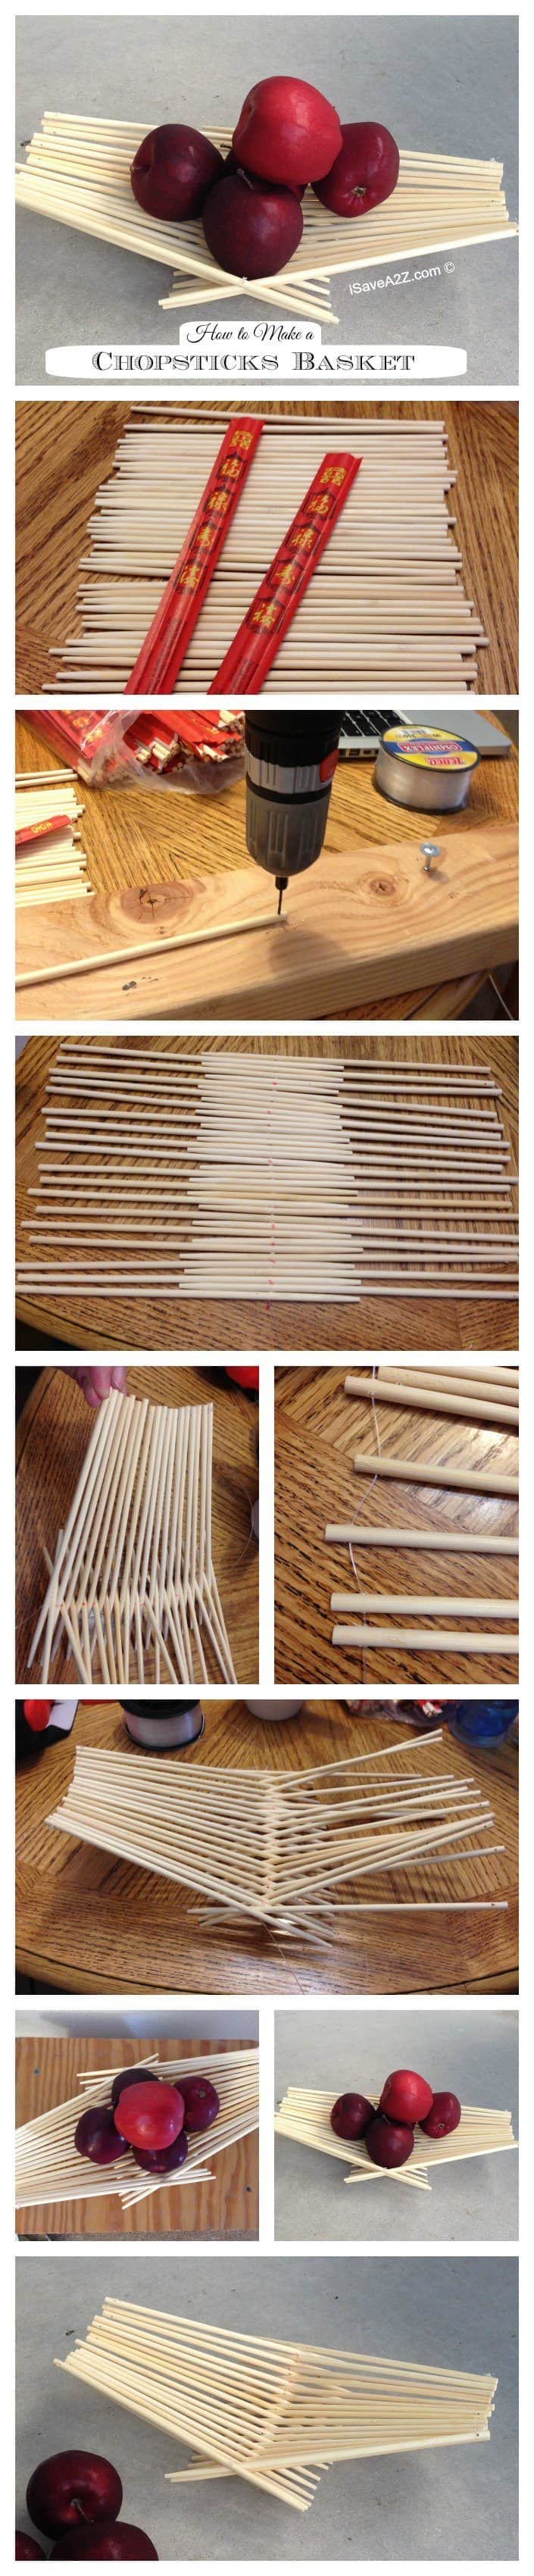 How to Make a Chopsticks Basket